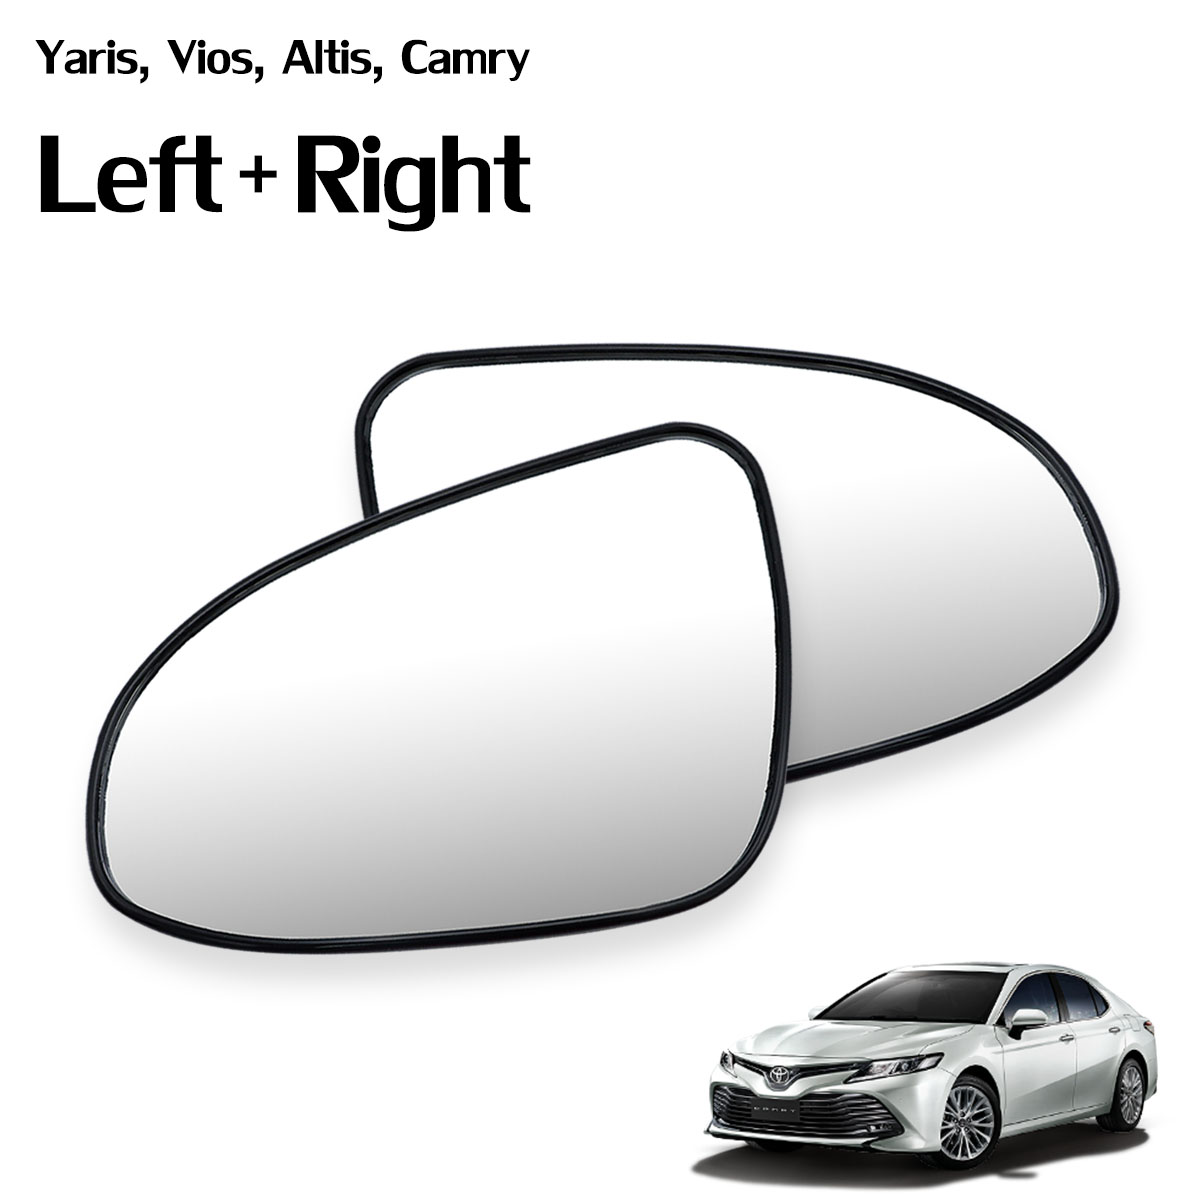 เนื้อเลนส์กระจก ข้าง ขวา+ซ้าย  ใส่ Toyota Vios Altis Yaris Camry ปี 2014 - 2019 RH +Lh  Wing Side Door Mirror Glass Len Yaris Vios Altis Camry Toyota มีบริการเก็บเงินปลายทาง